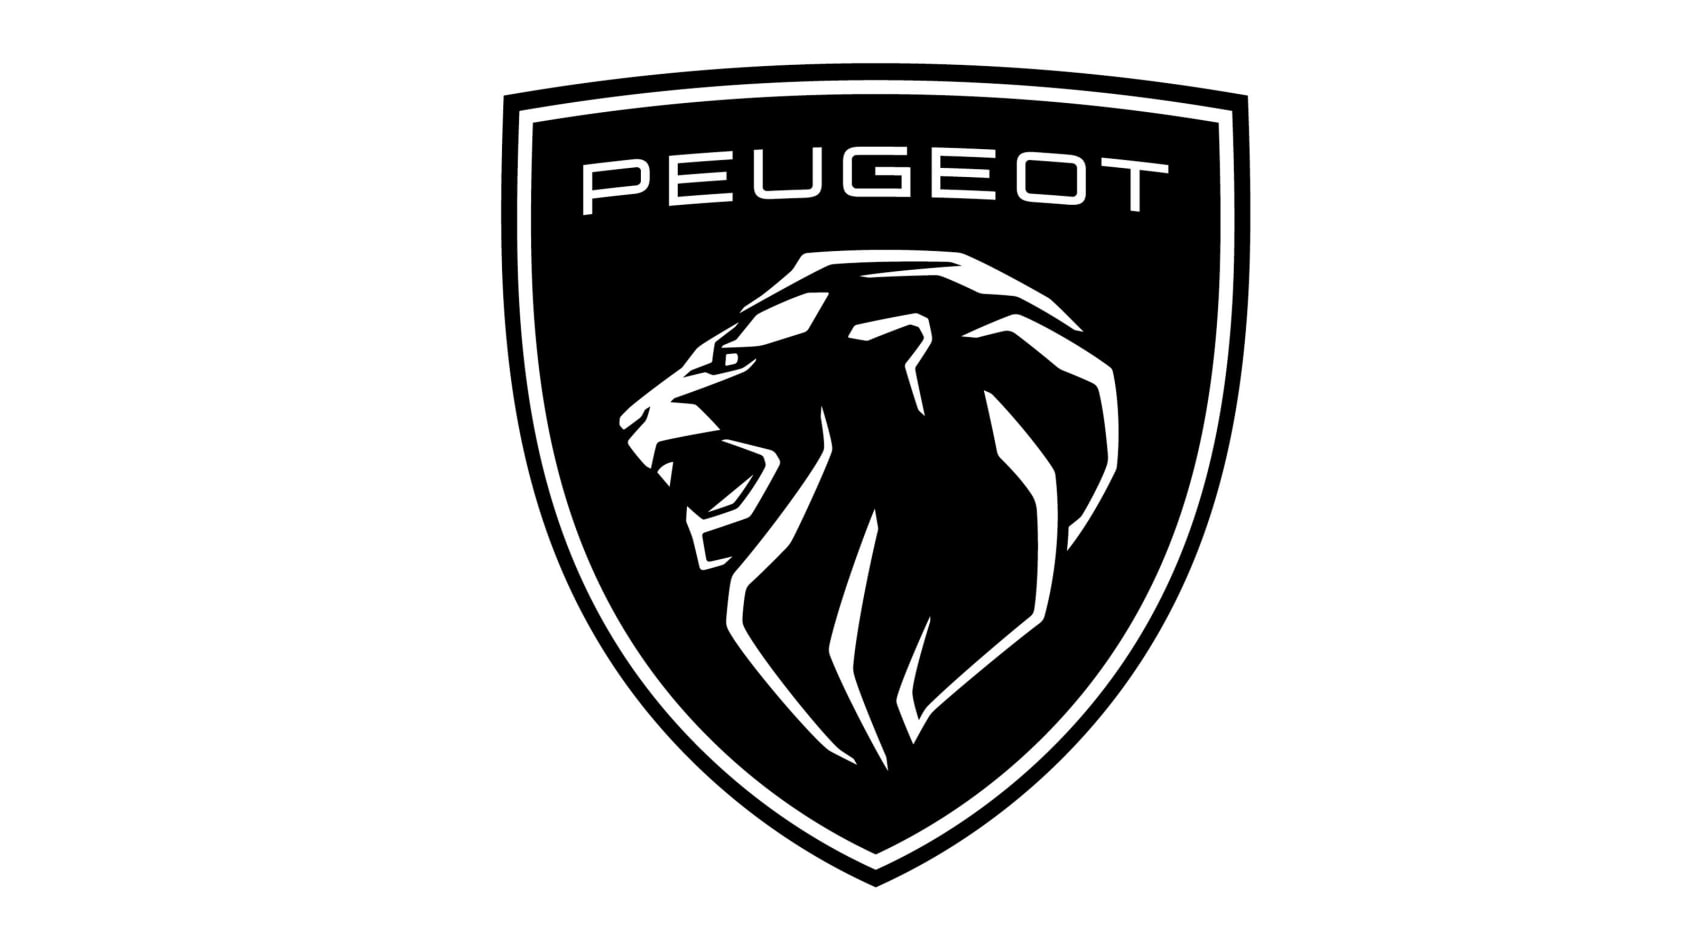 peugeot badge 2021 new